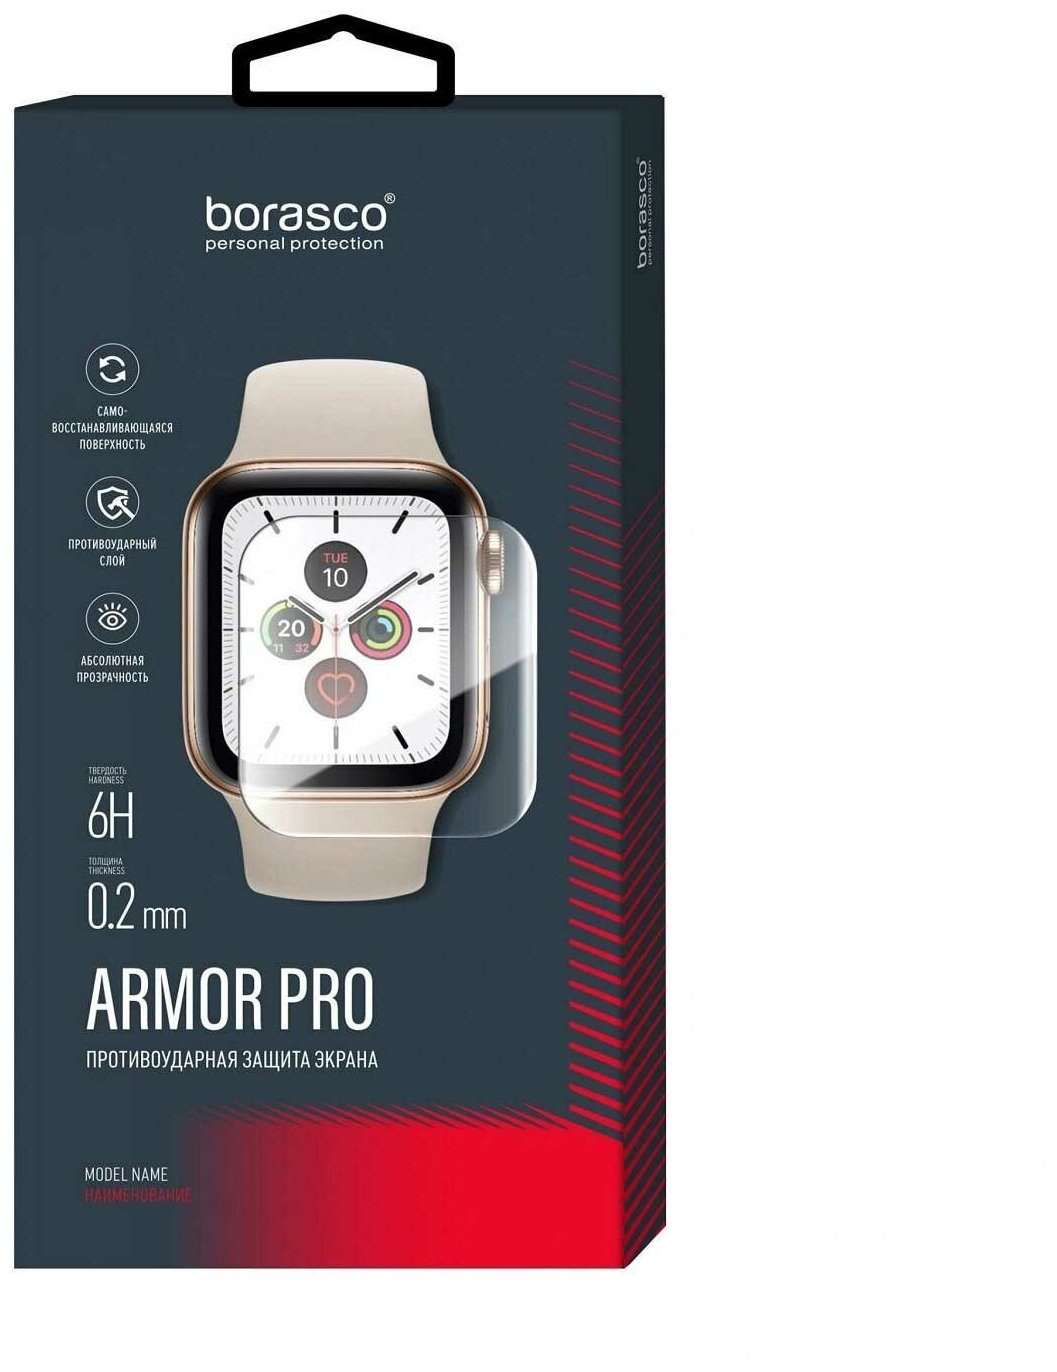 Защита экрана BoraSCO Armor Pro для Aimoto Indigo матовый